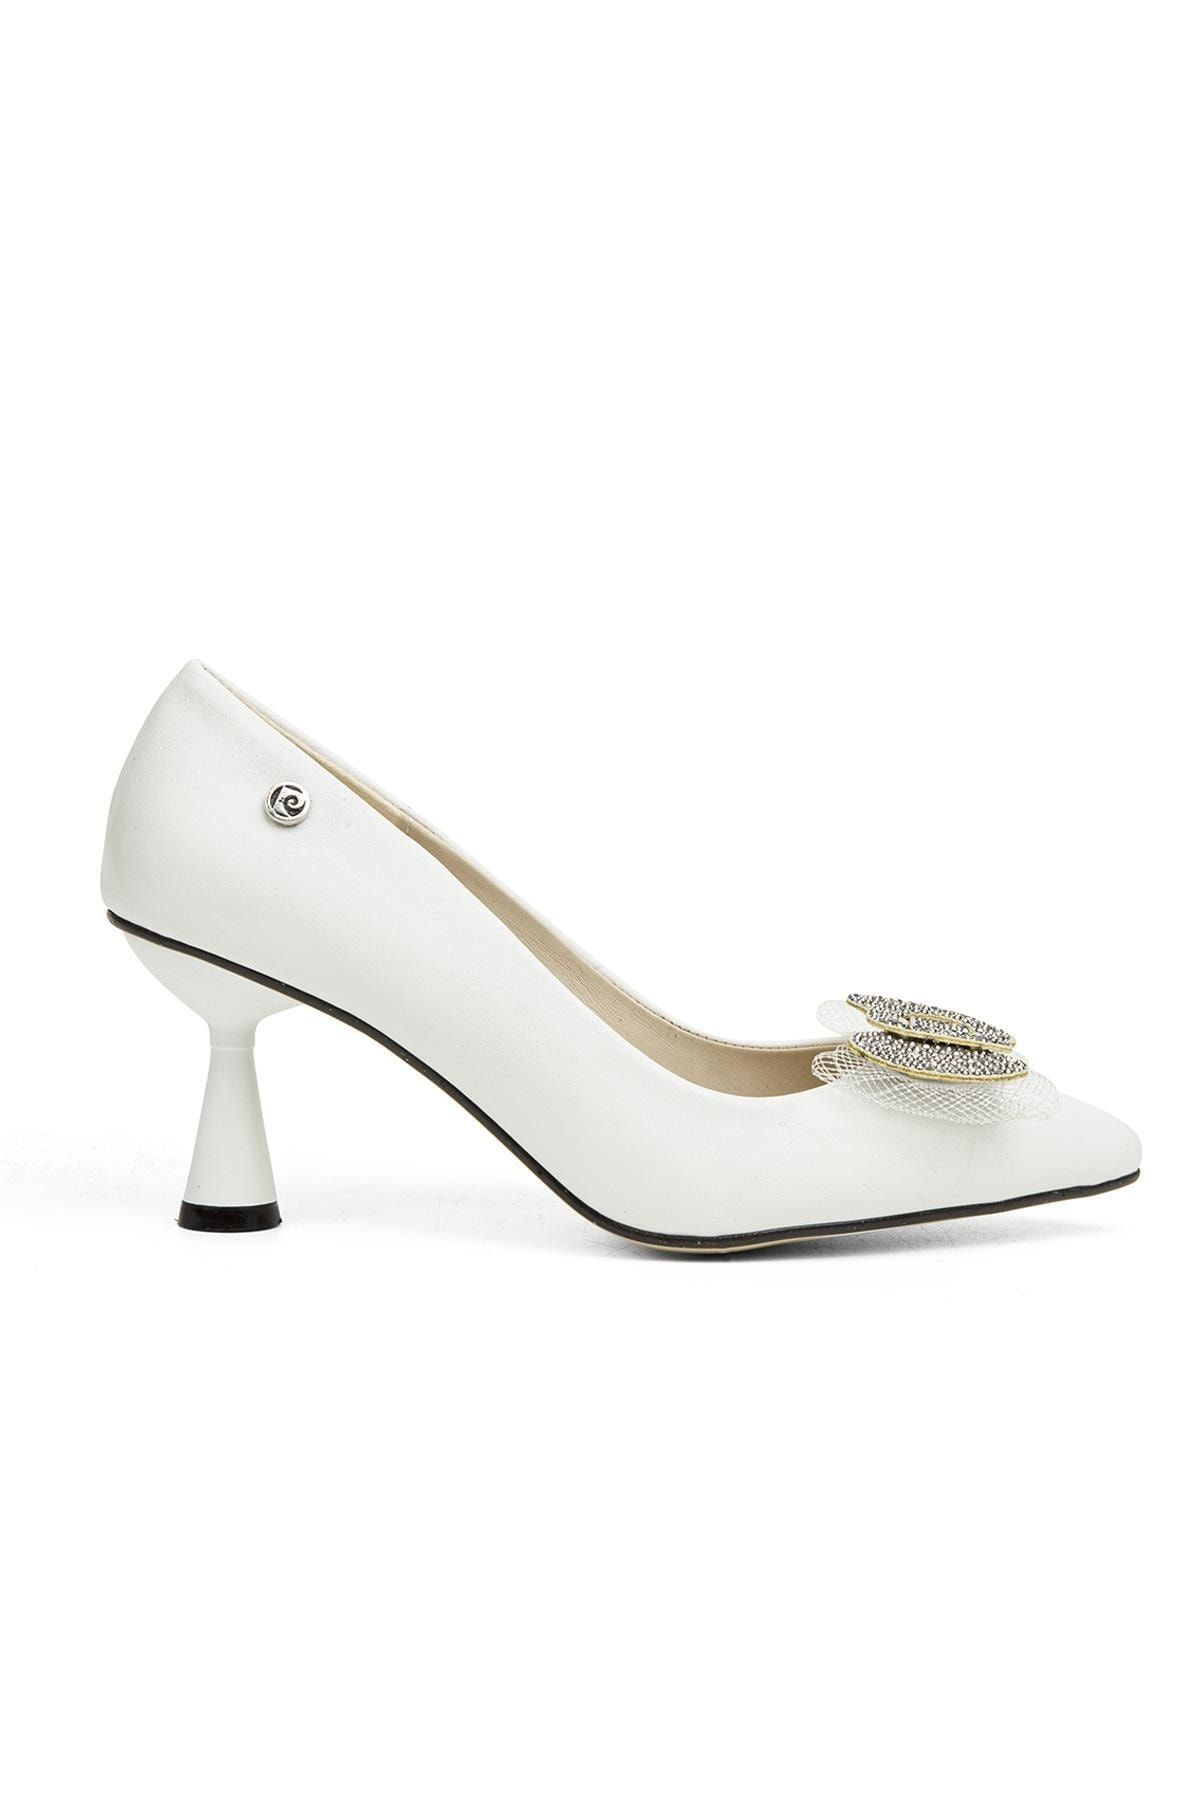 Pierre Cardin ® | Pc-51651 - 3478 Beyaz - Kadın Topuklu Ayakkabı